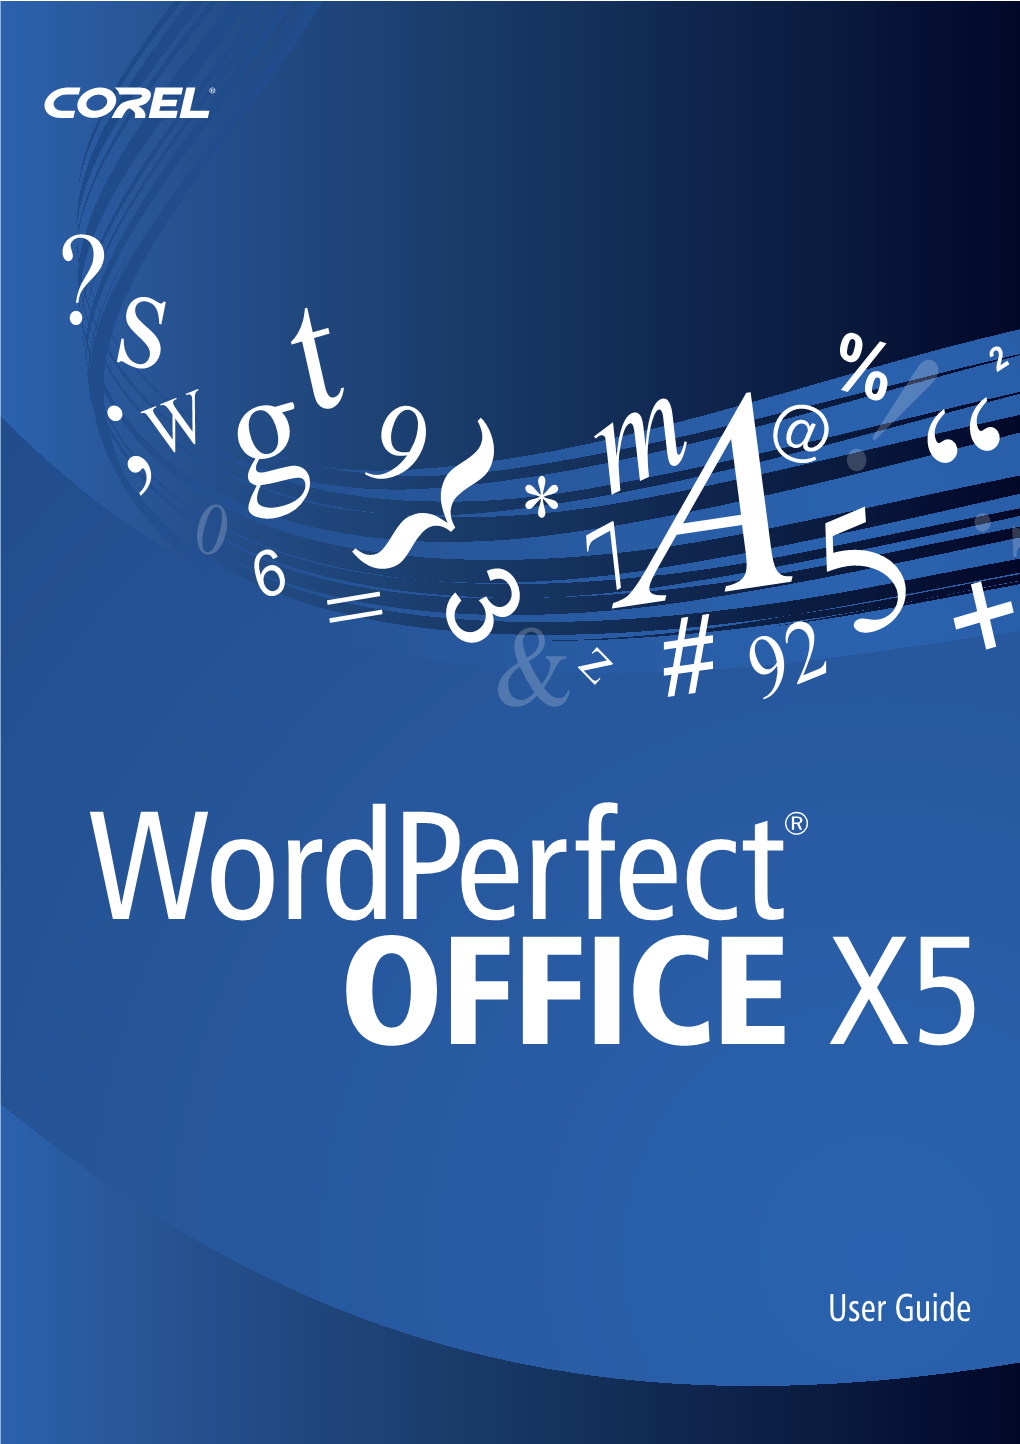 Corel® Wordperfect® Office X5 User Guide